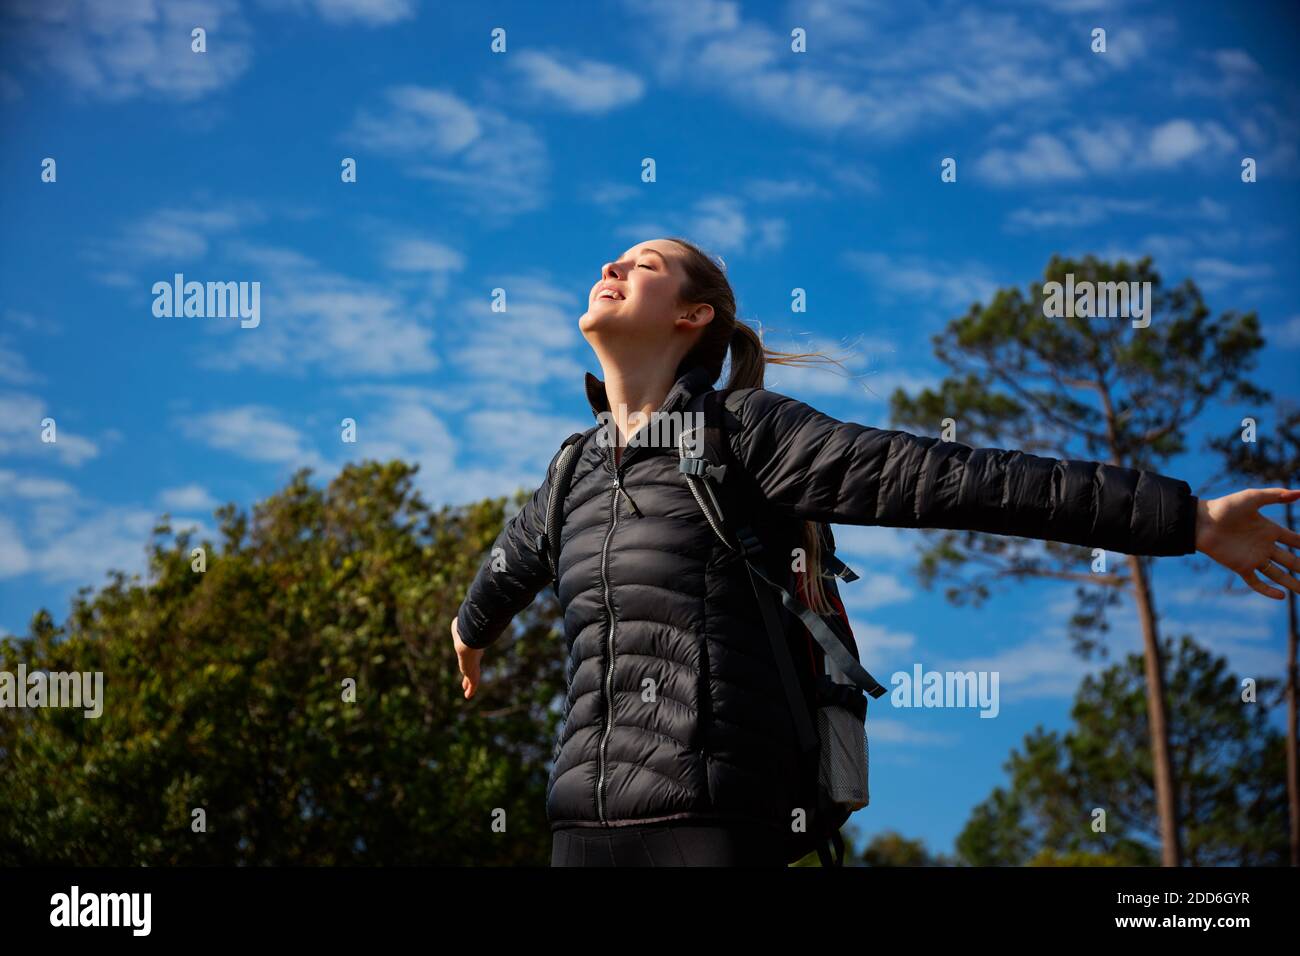 Aktive junge Frau trägt Rucksack auf Wanderung in der Landschaft Verbreitung Ihre Arme und ihre Augen schließen, während sie Sinn genießt Freiheit und Raum Stockfoto